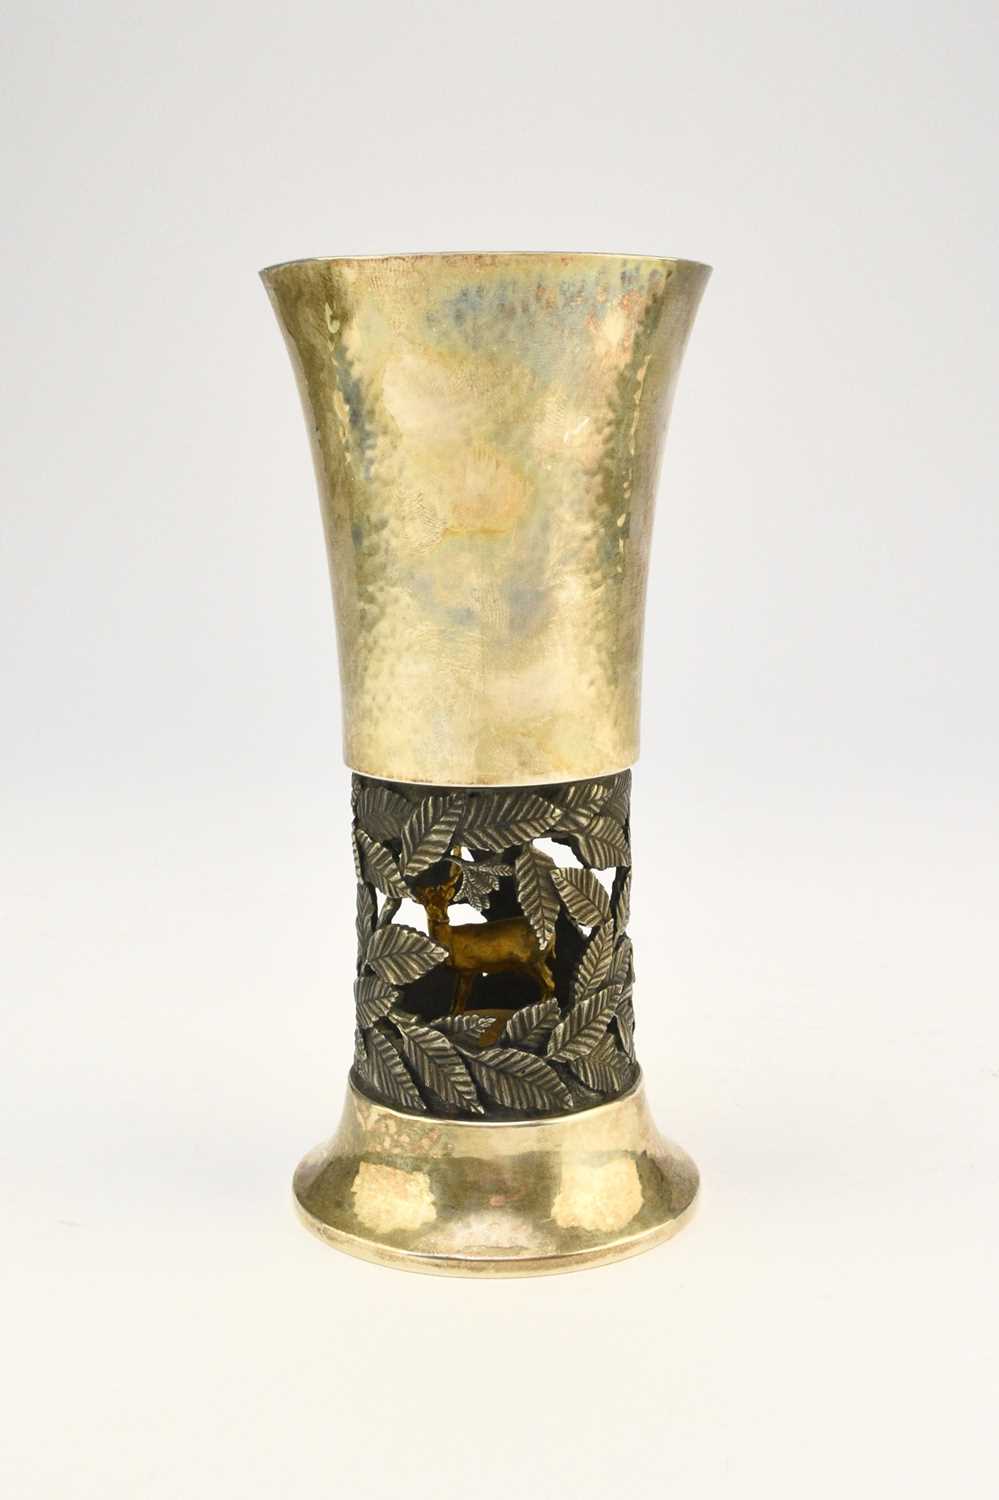 An Elizabeth II Limited Edition silver gilt goblet